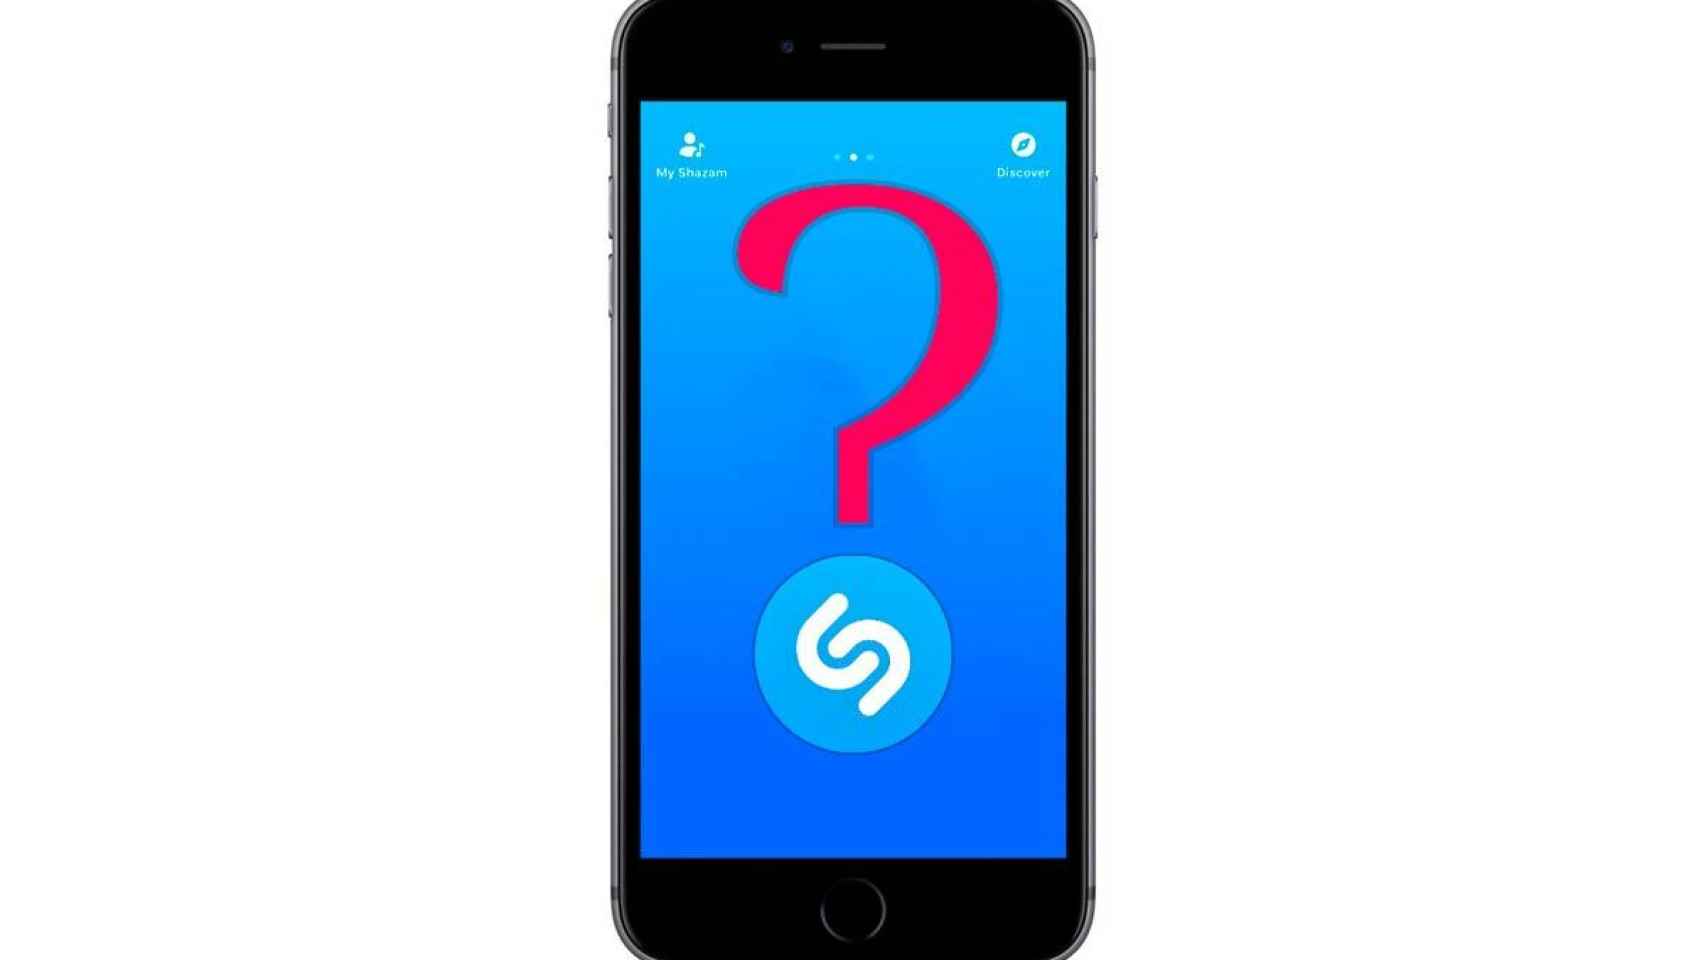 ¿Desaparecerá Shazam de Android ahora que la ha comprado Apple?